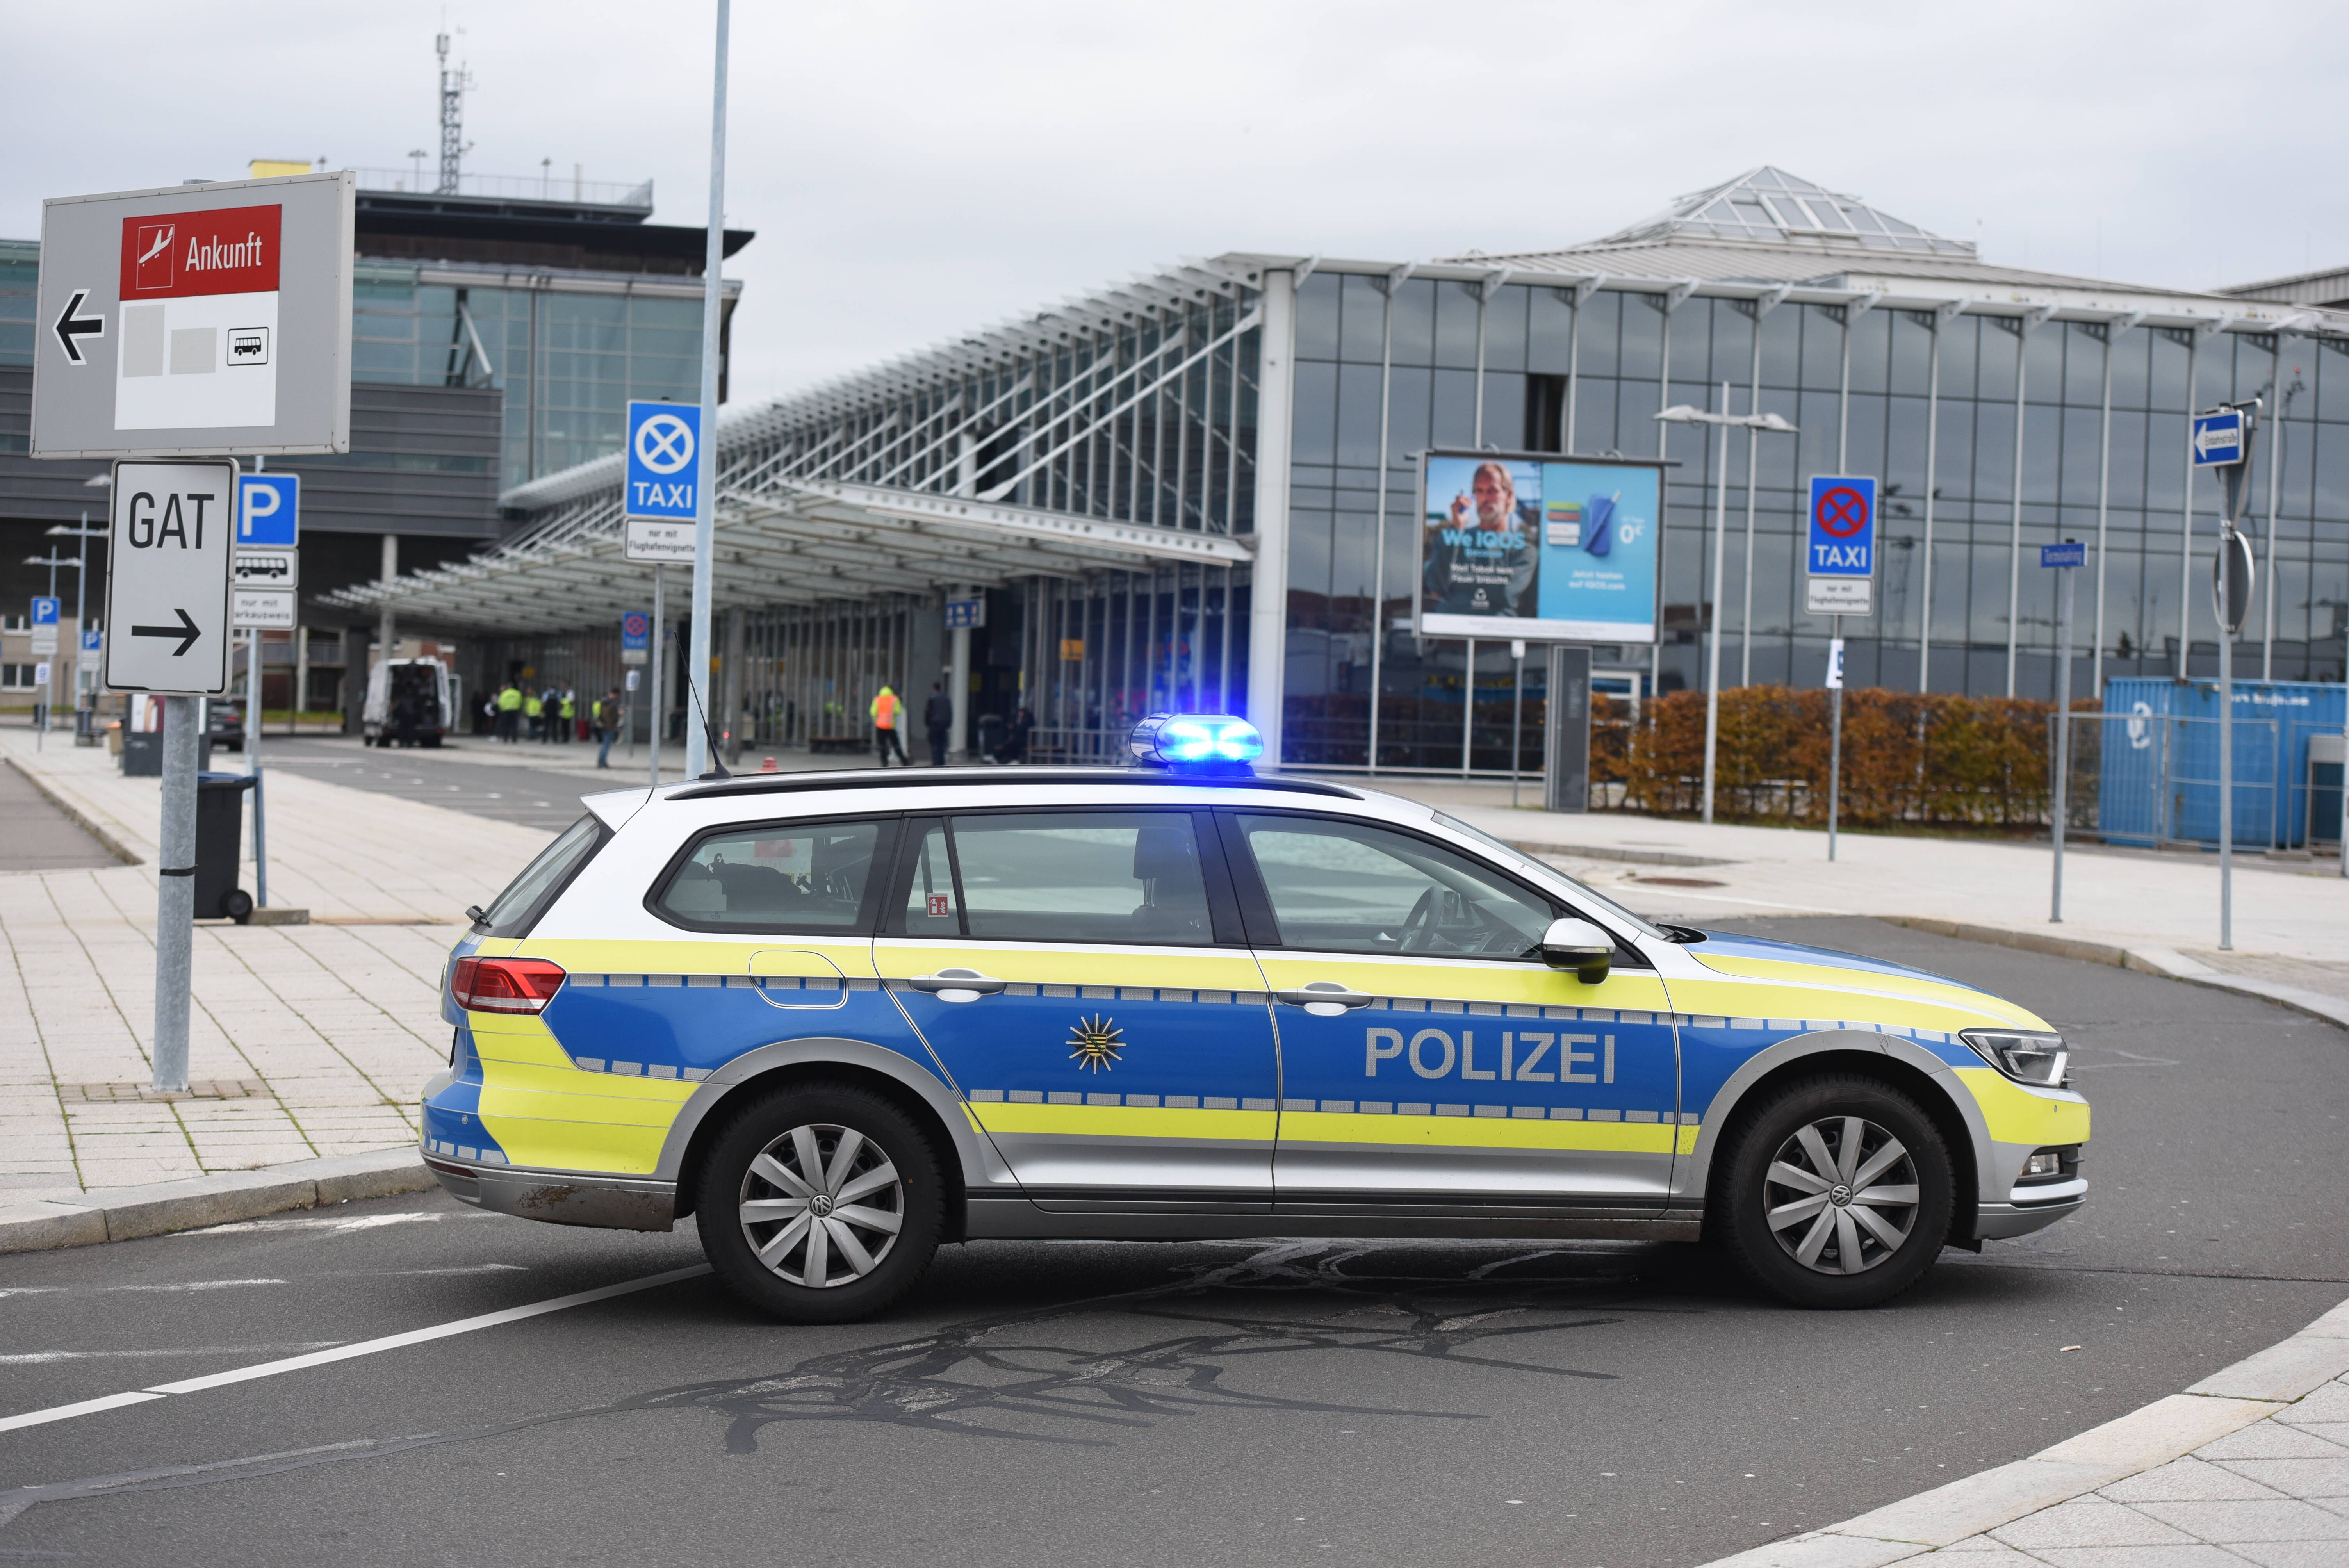 ¡El aeropuerto de Leipzig/Halle está completamente cerrado!  ¿Qué estaba pasando aquí?